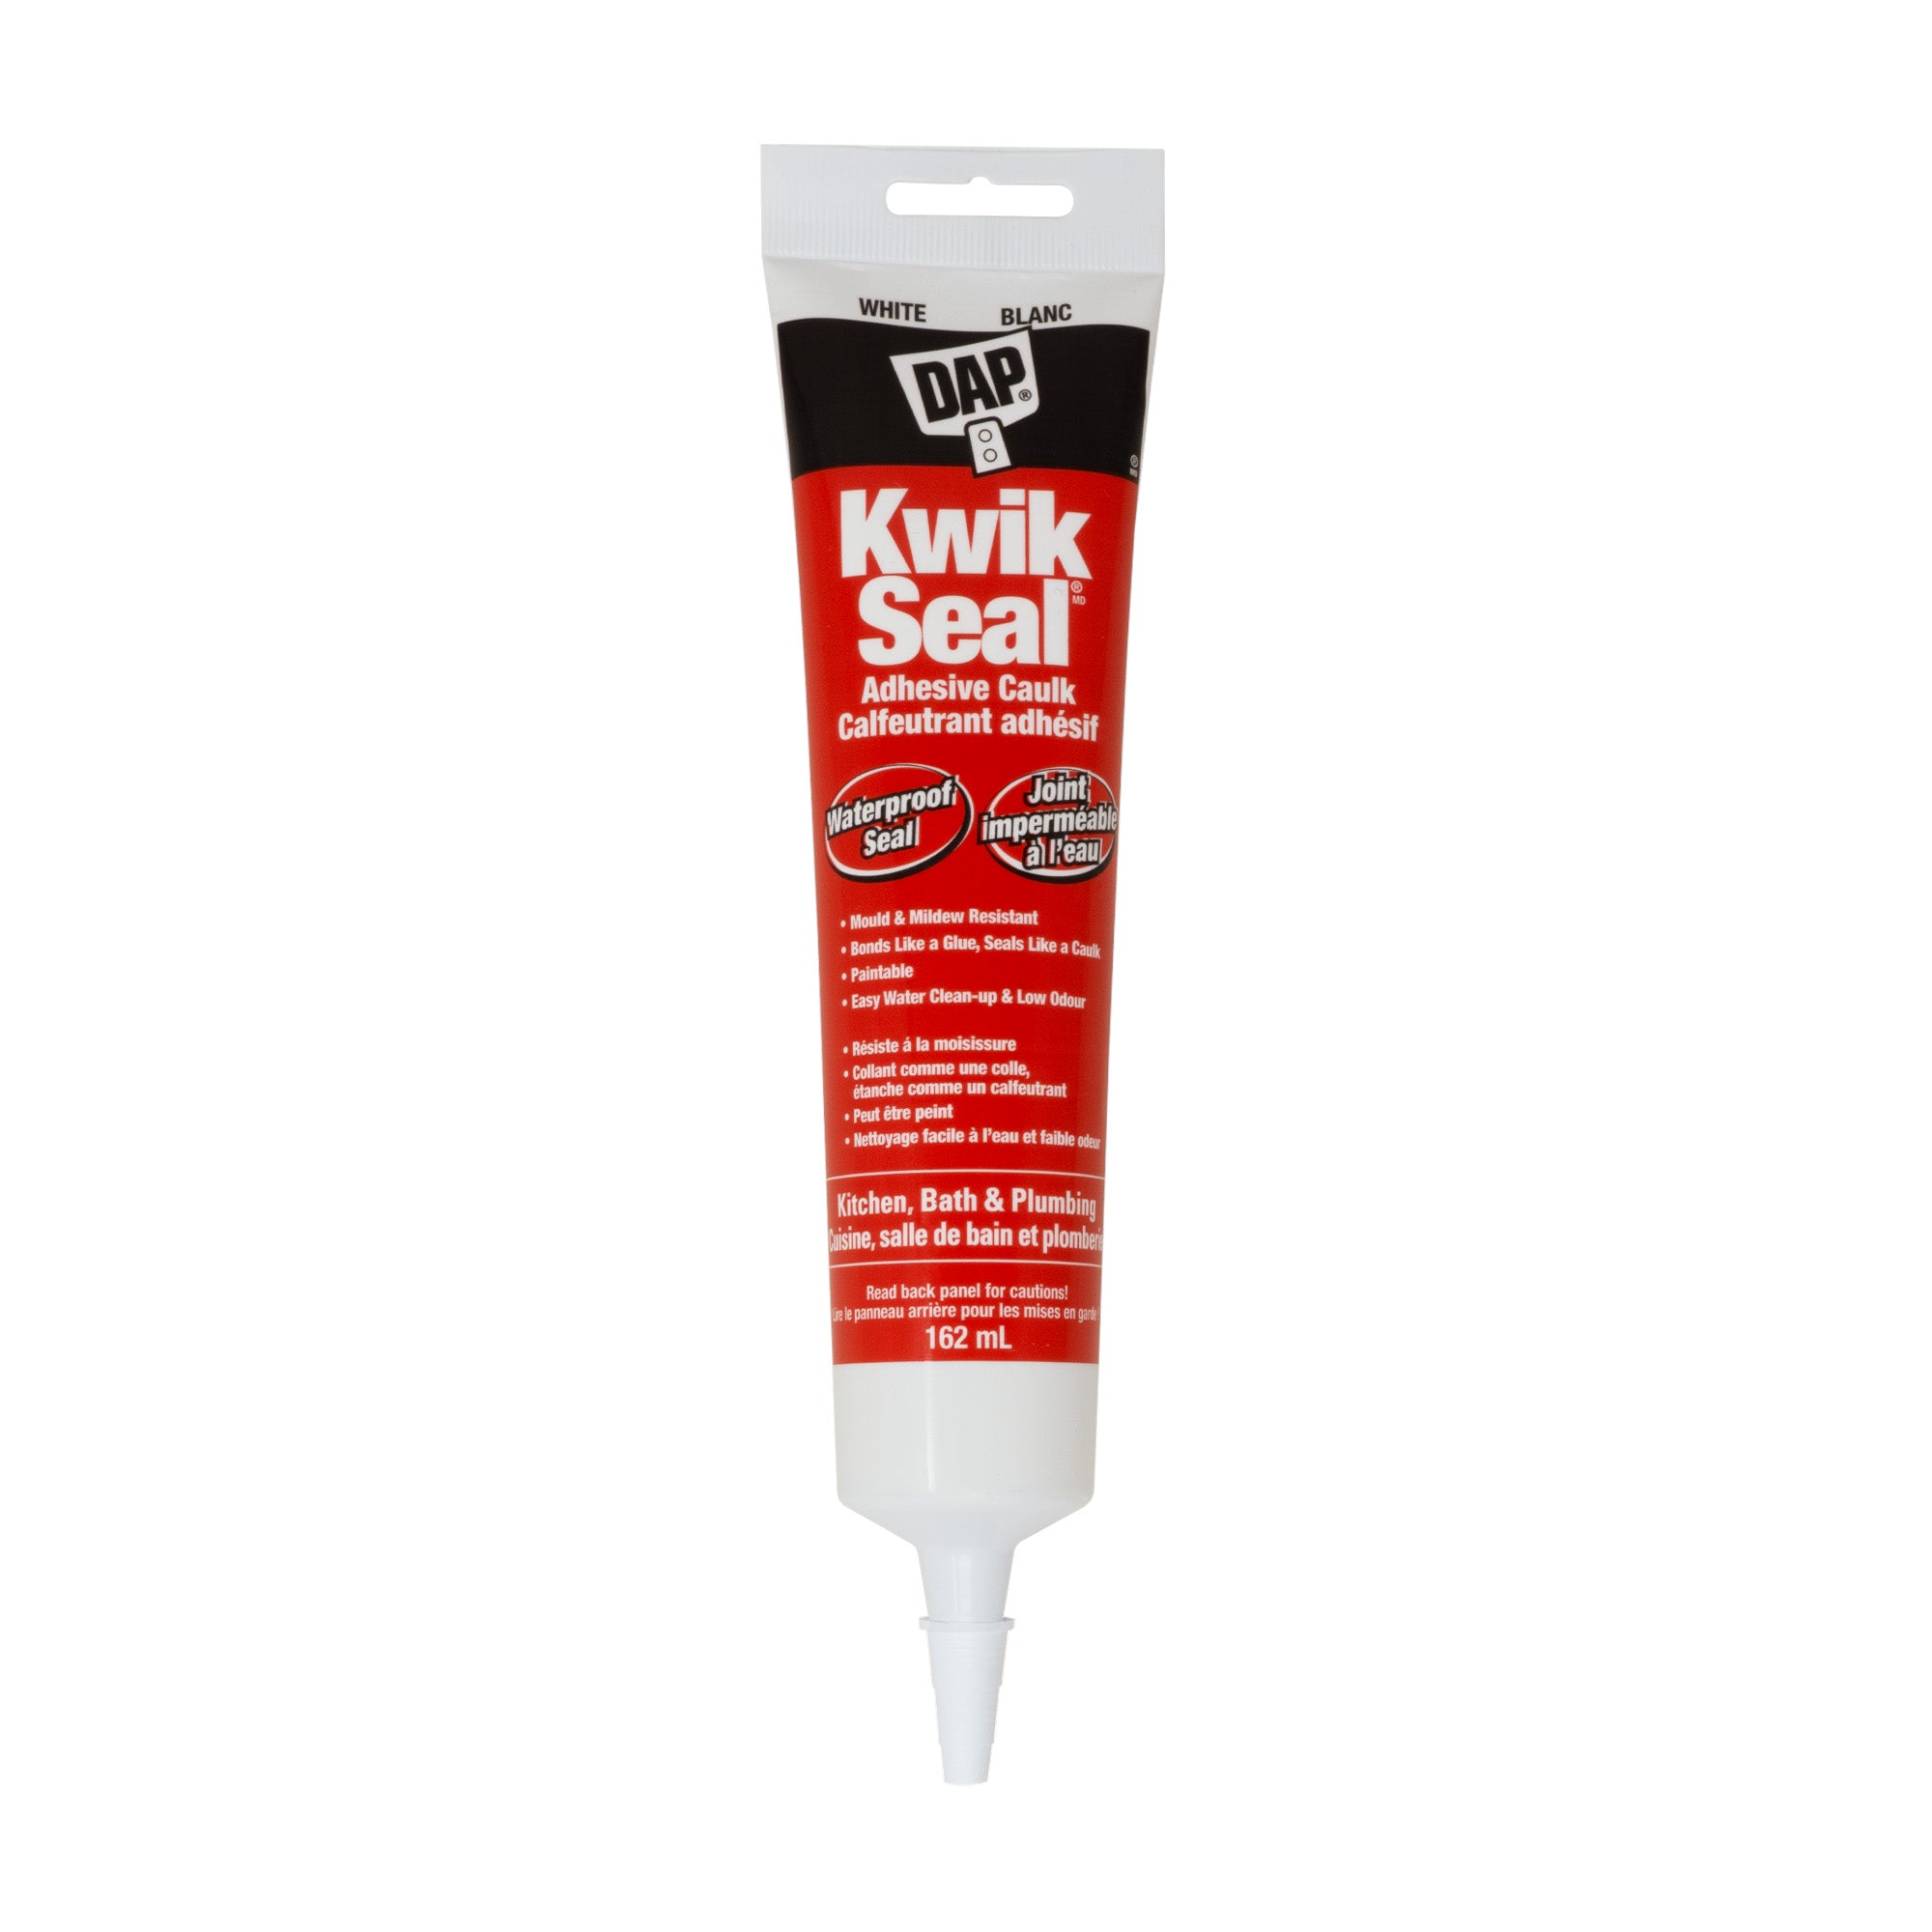 Dap Kwik Seal Adhesive Caulk 162ml